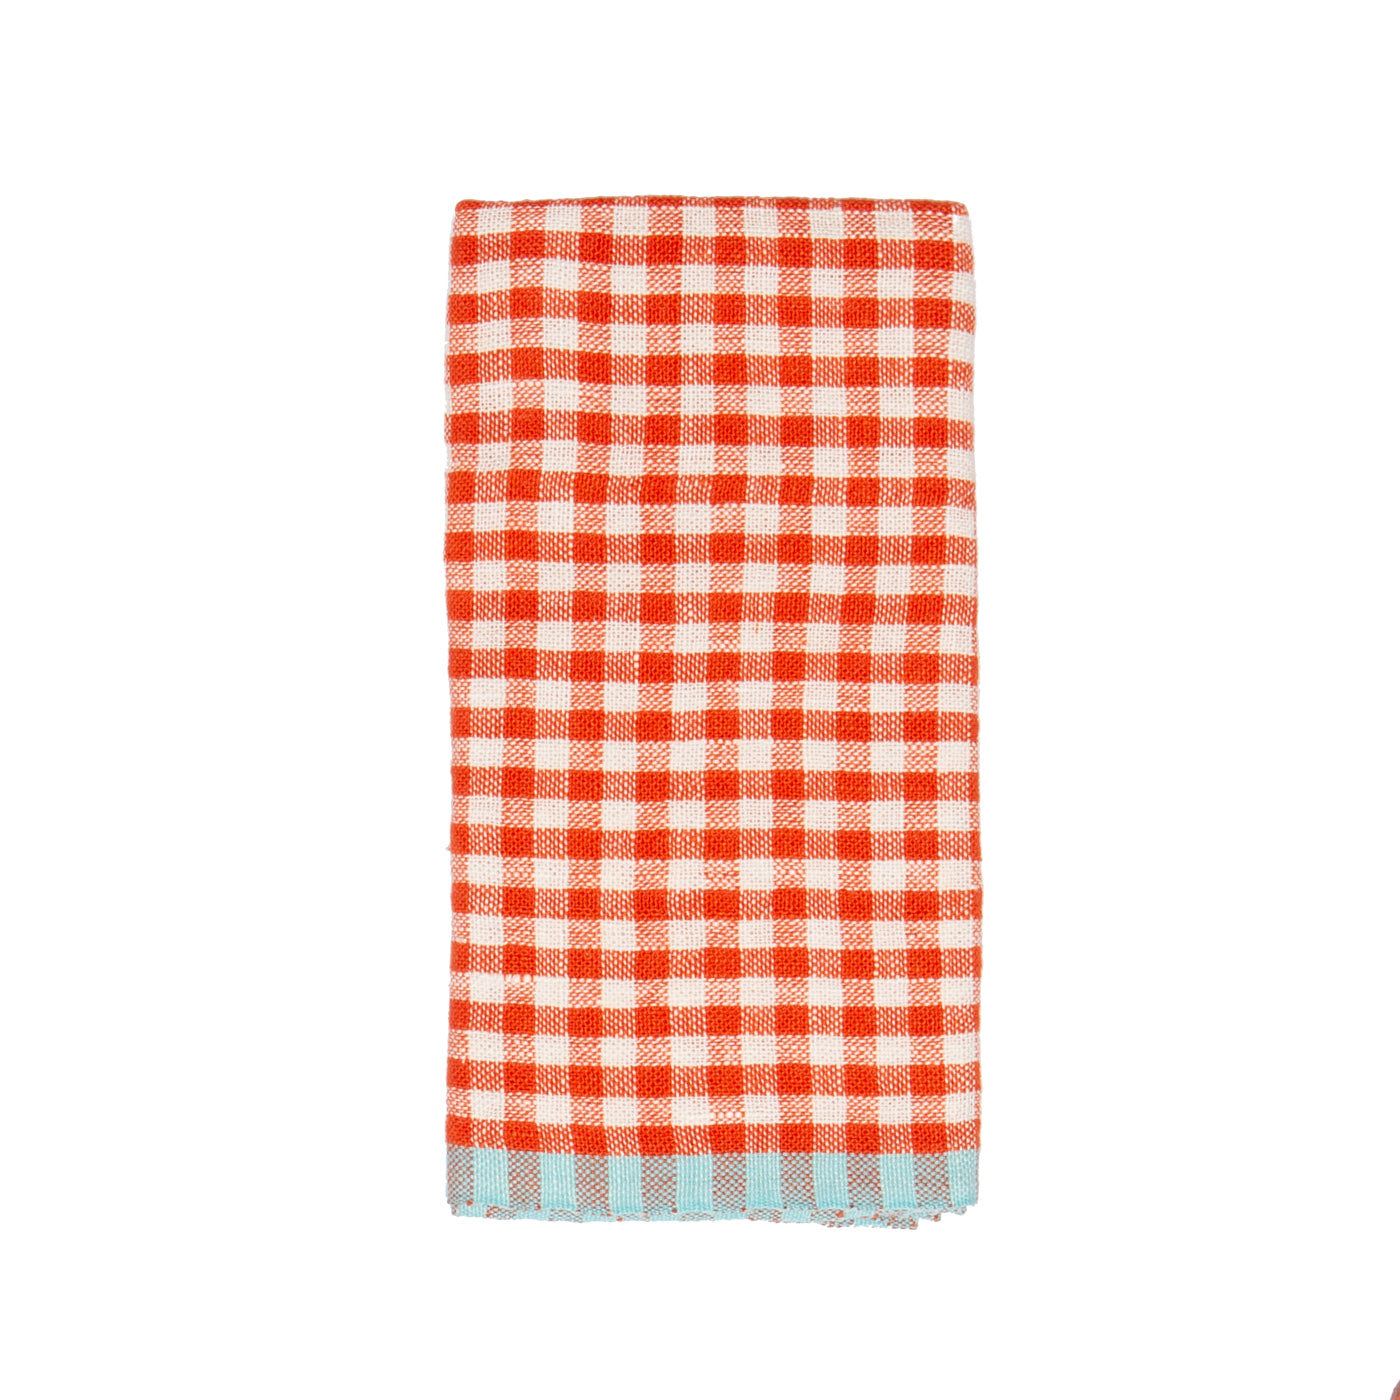 Two-Tone Gingham Kitchen Towels Orange & Aqua, Set of 2